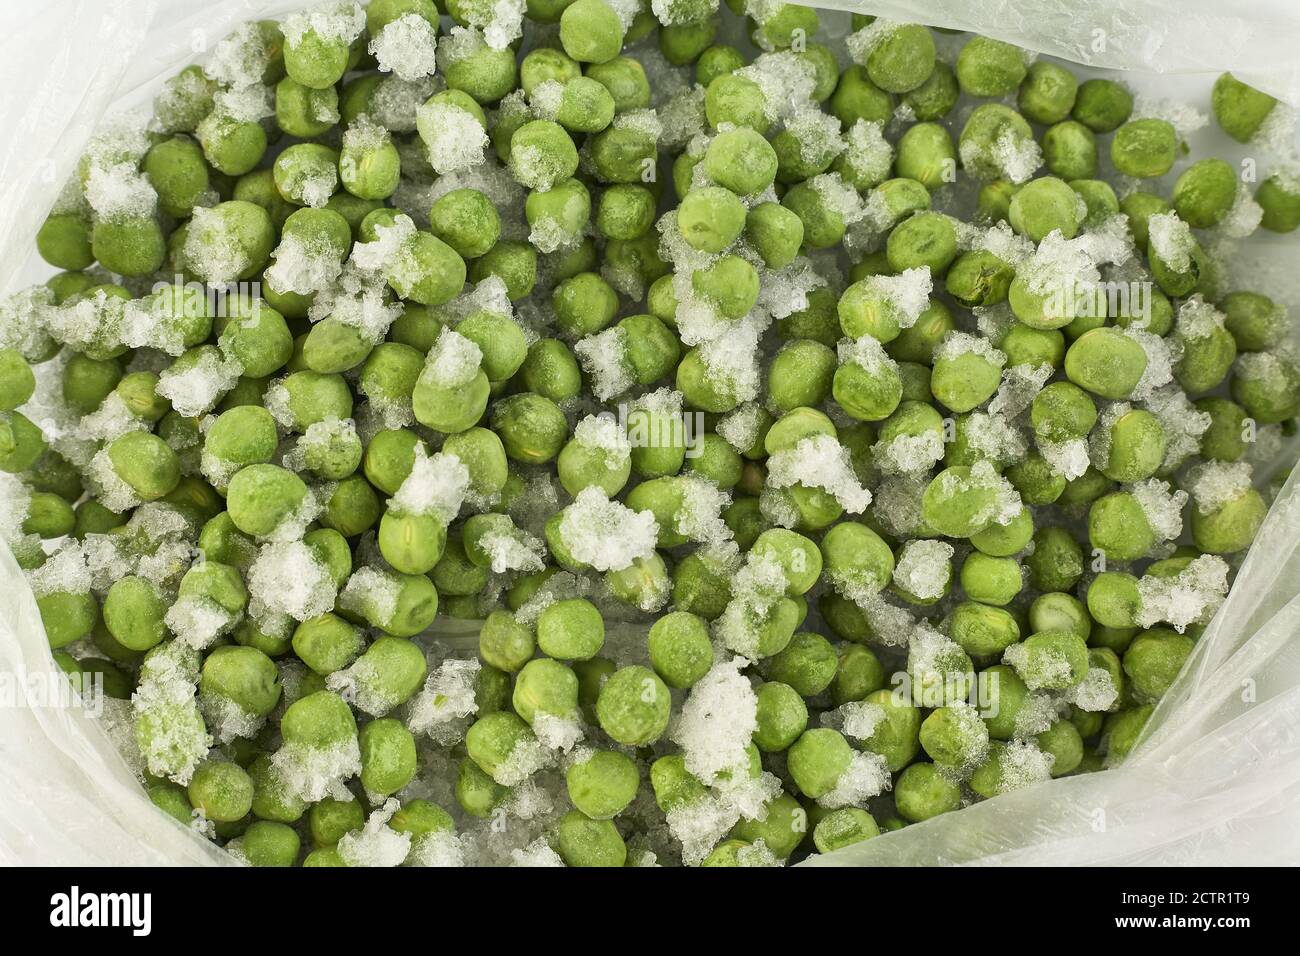 Verduras Congeladas En Bolsos En Refrigerador Foto de archivo - Imagen de  comida, helada: 103312638